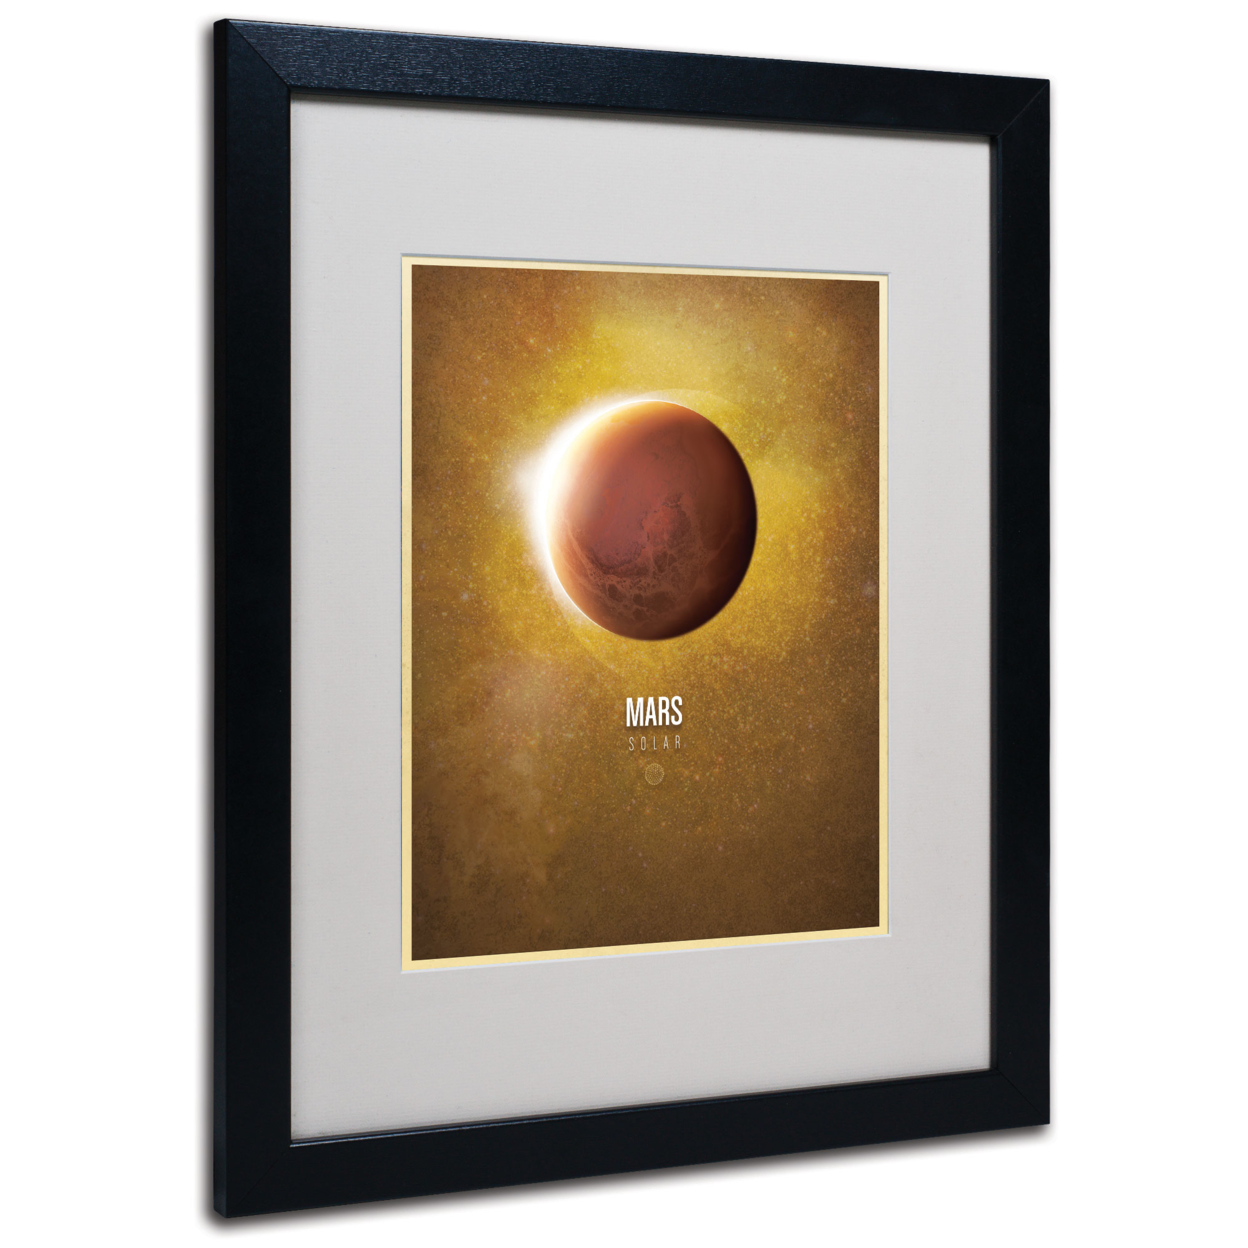 Christian Jackson 'Mars' Black Wooden Framed Art 18 X 22 Inches